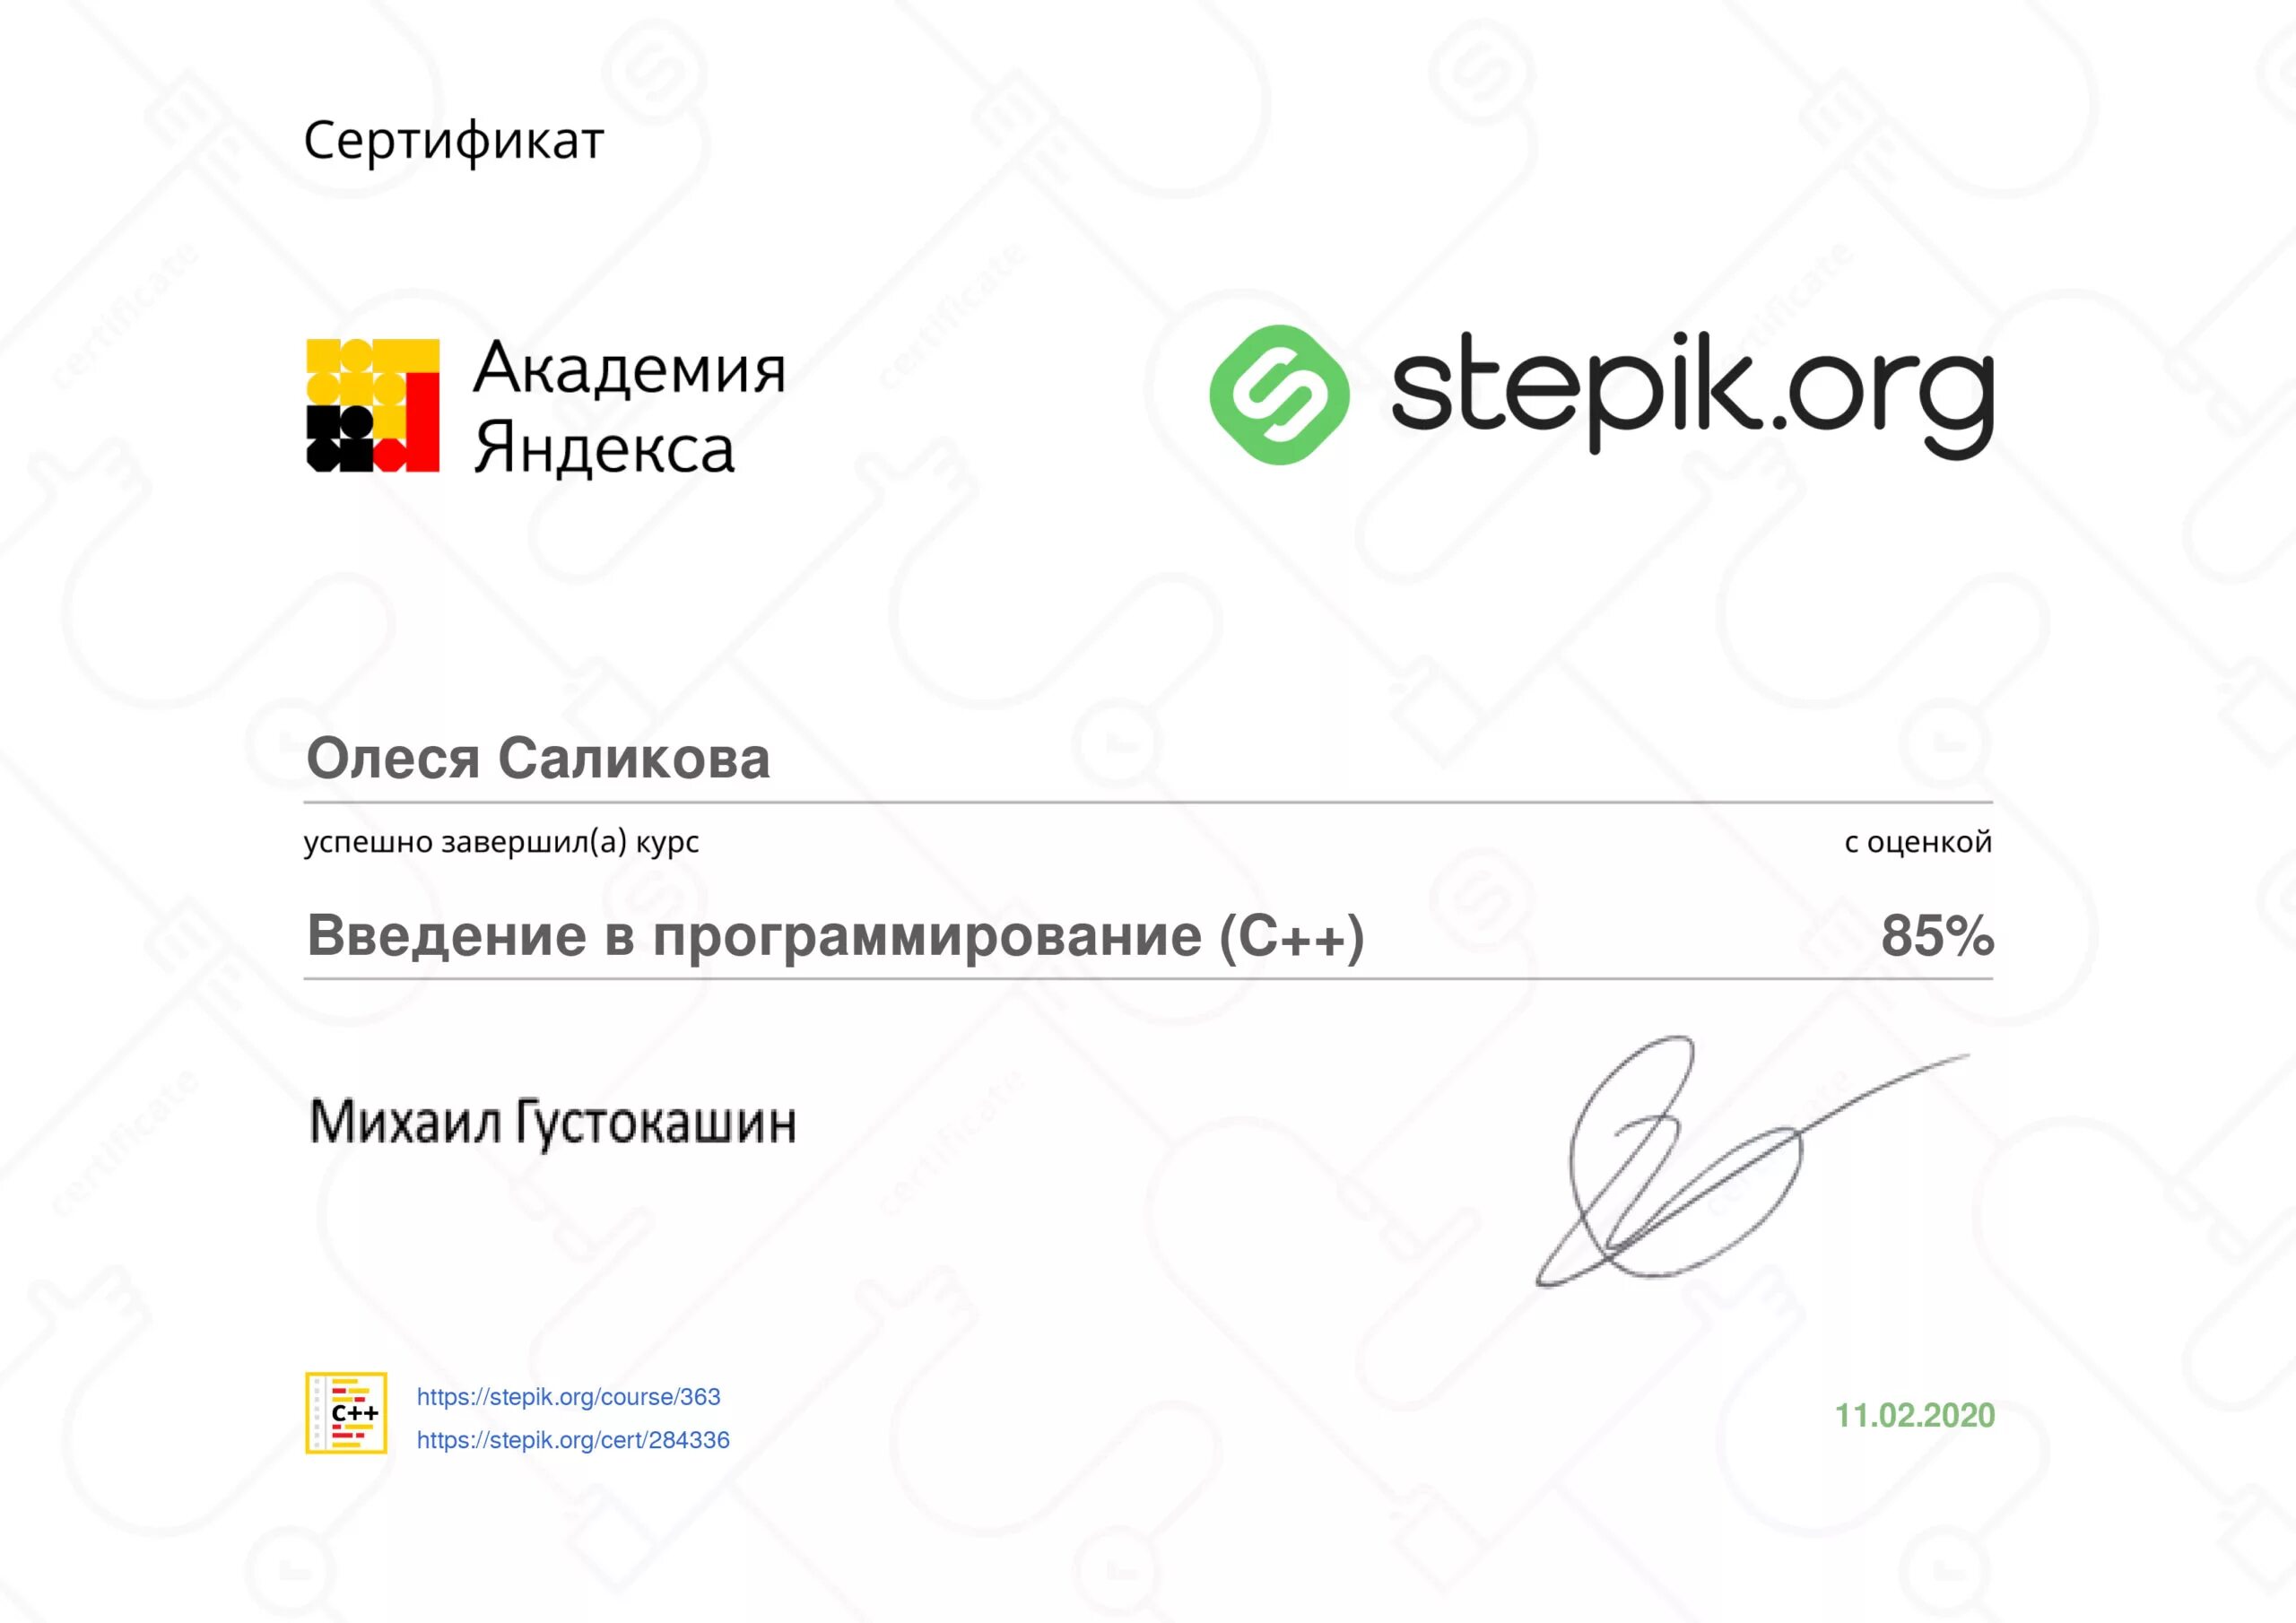 Certificating org. Сертификат Академия Яндекса. Stepic сертификаты. Сертификат от stepik.